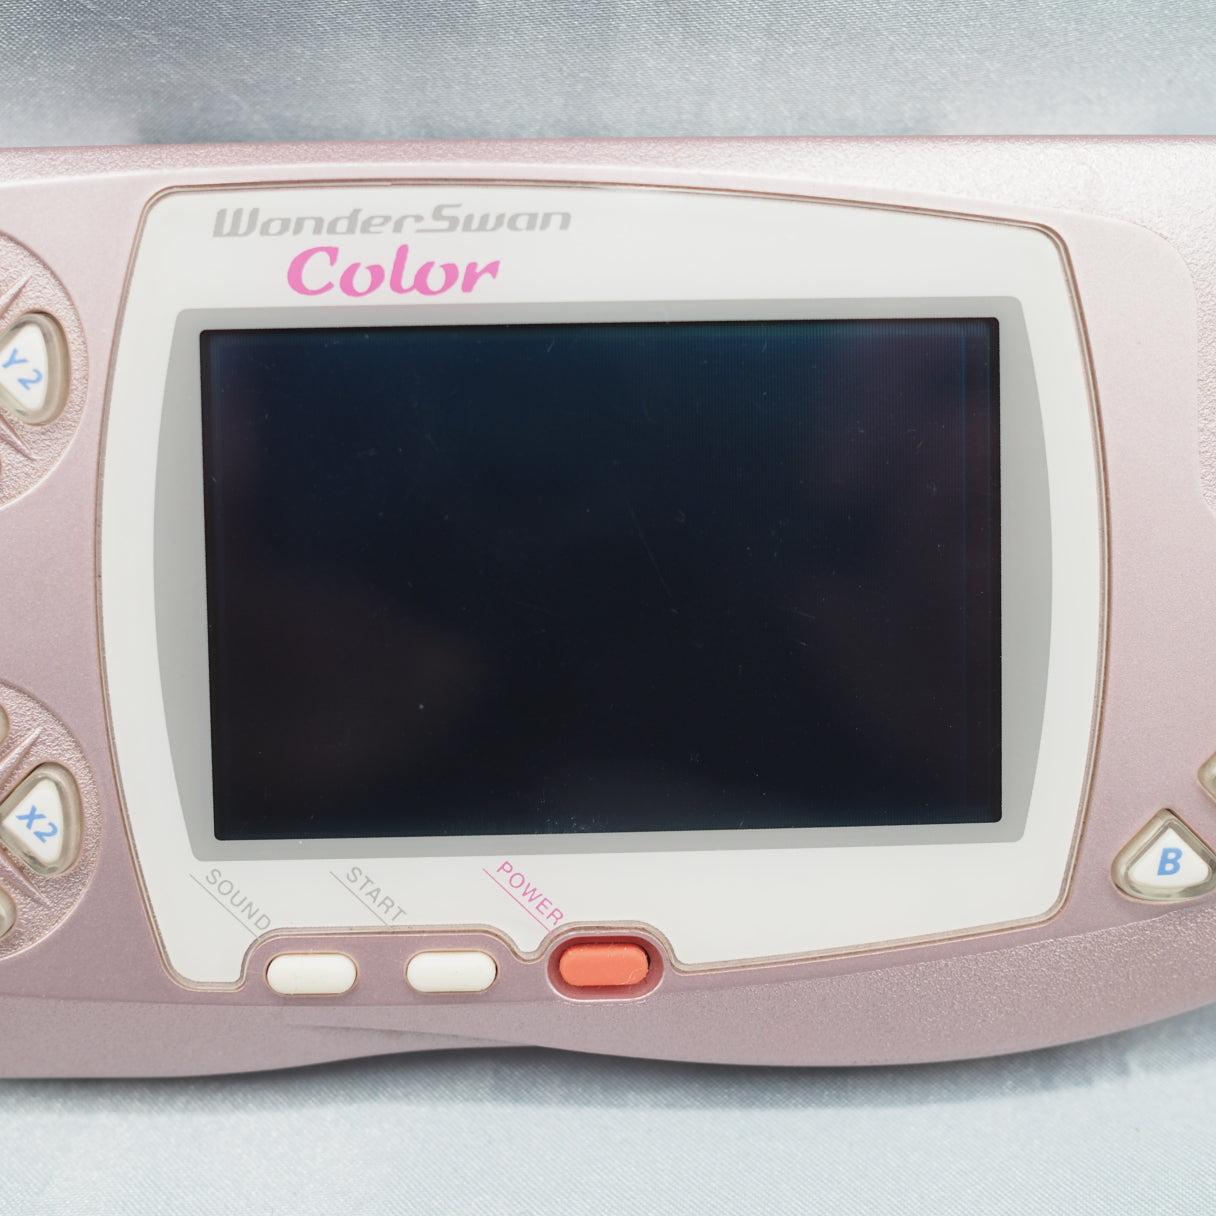 WonderSwan Color [Pearl Pink]